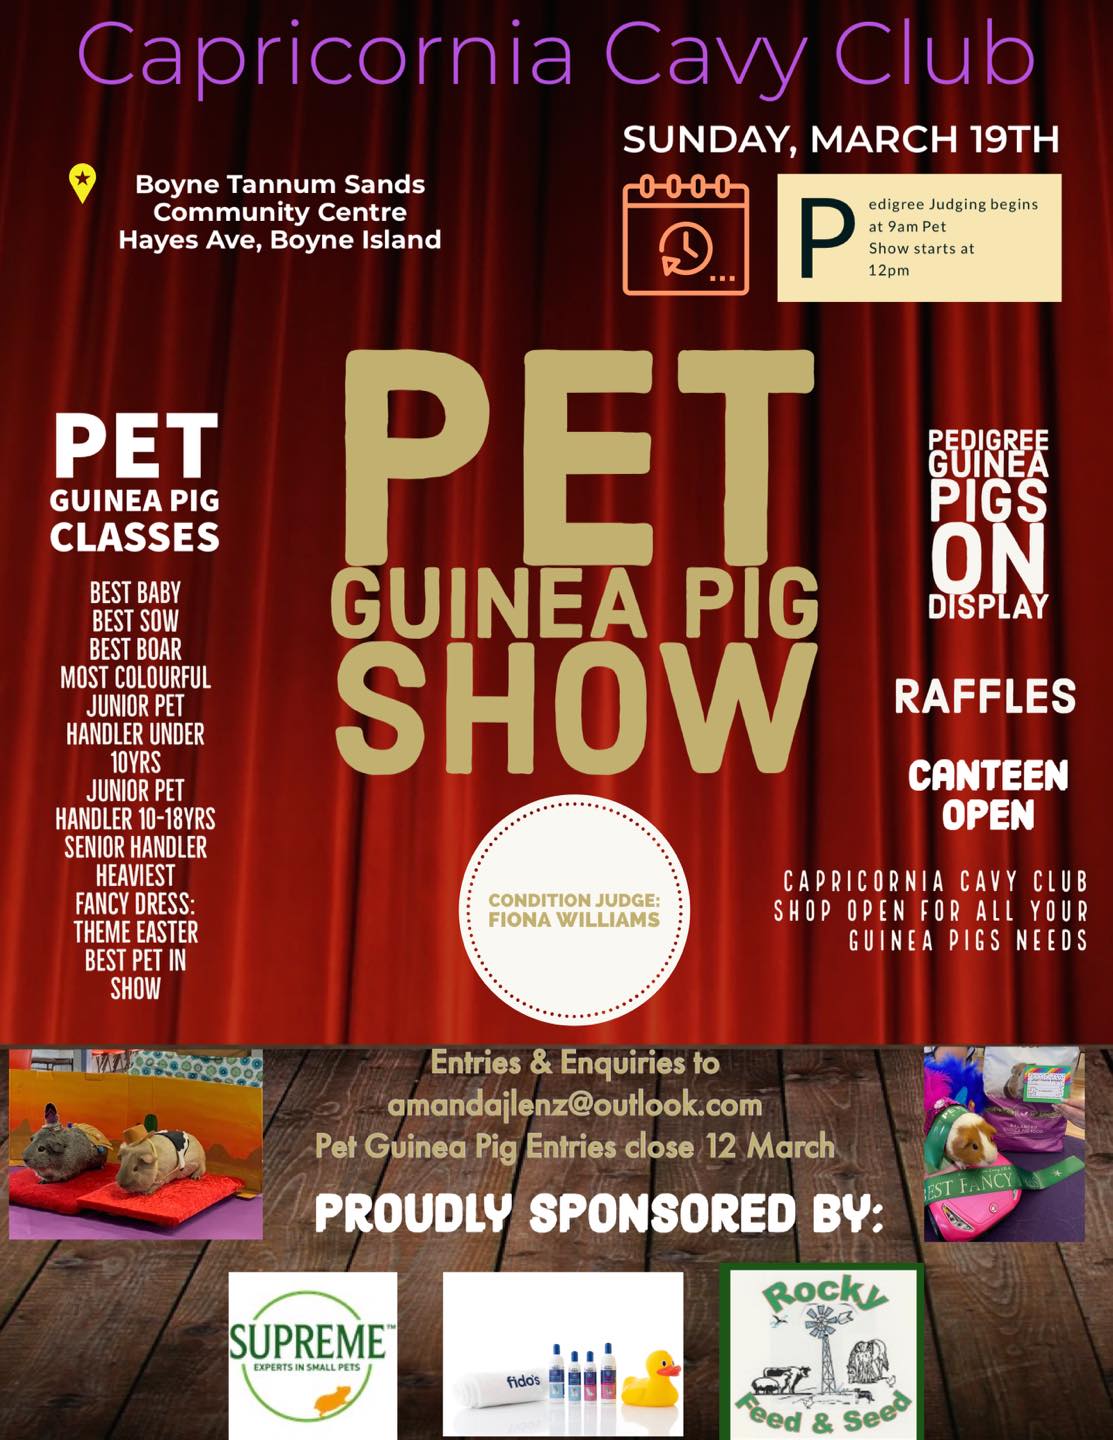 Pet guiea pig show